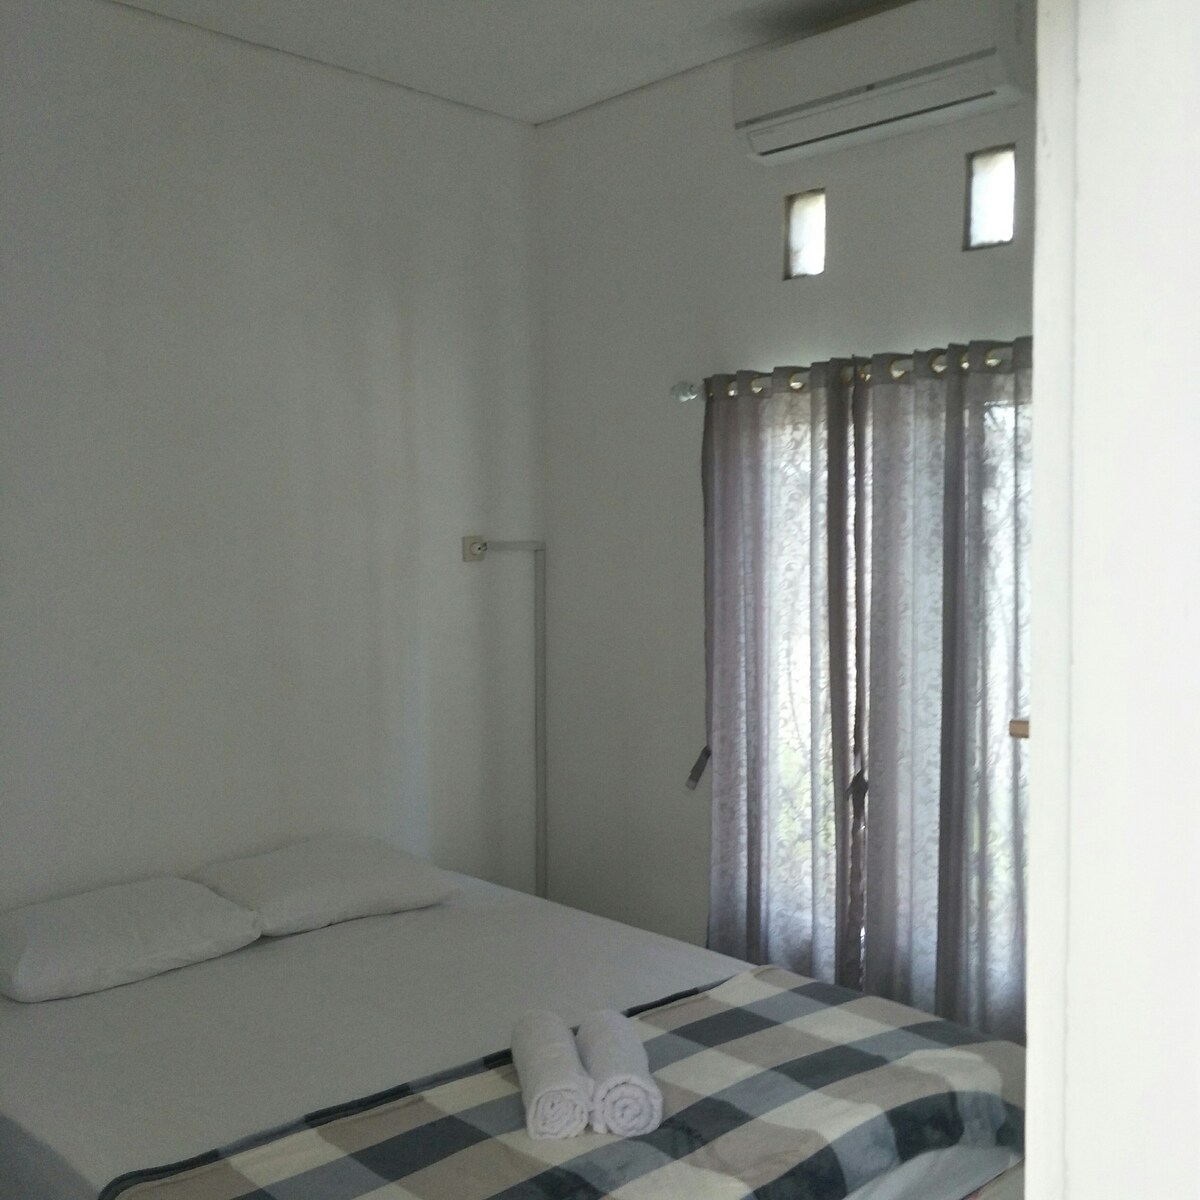 努沙杜瓦海滩附近的鸽子舒适双人房101房间